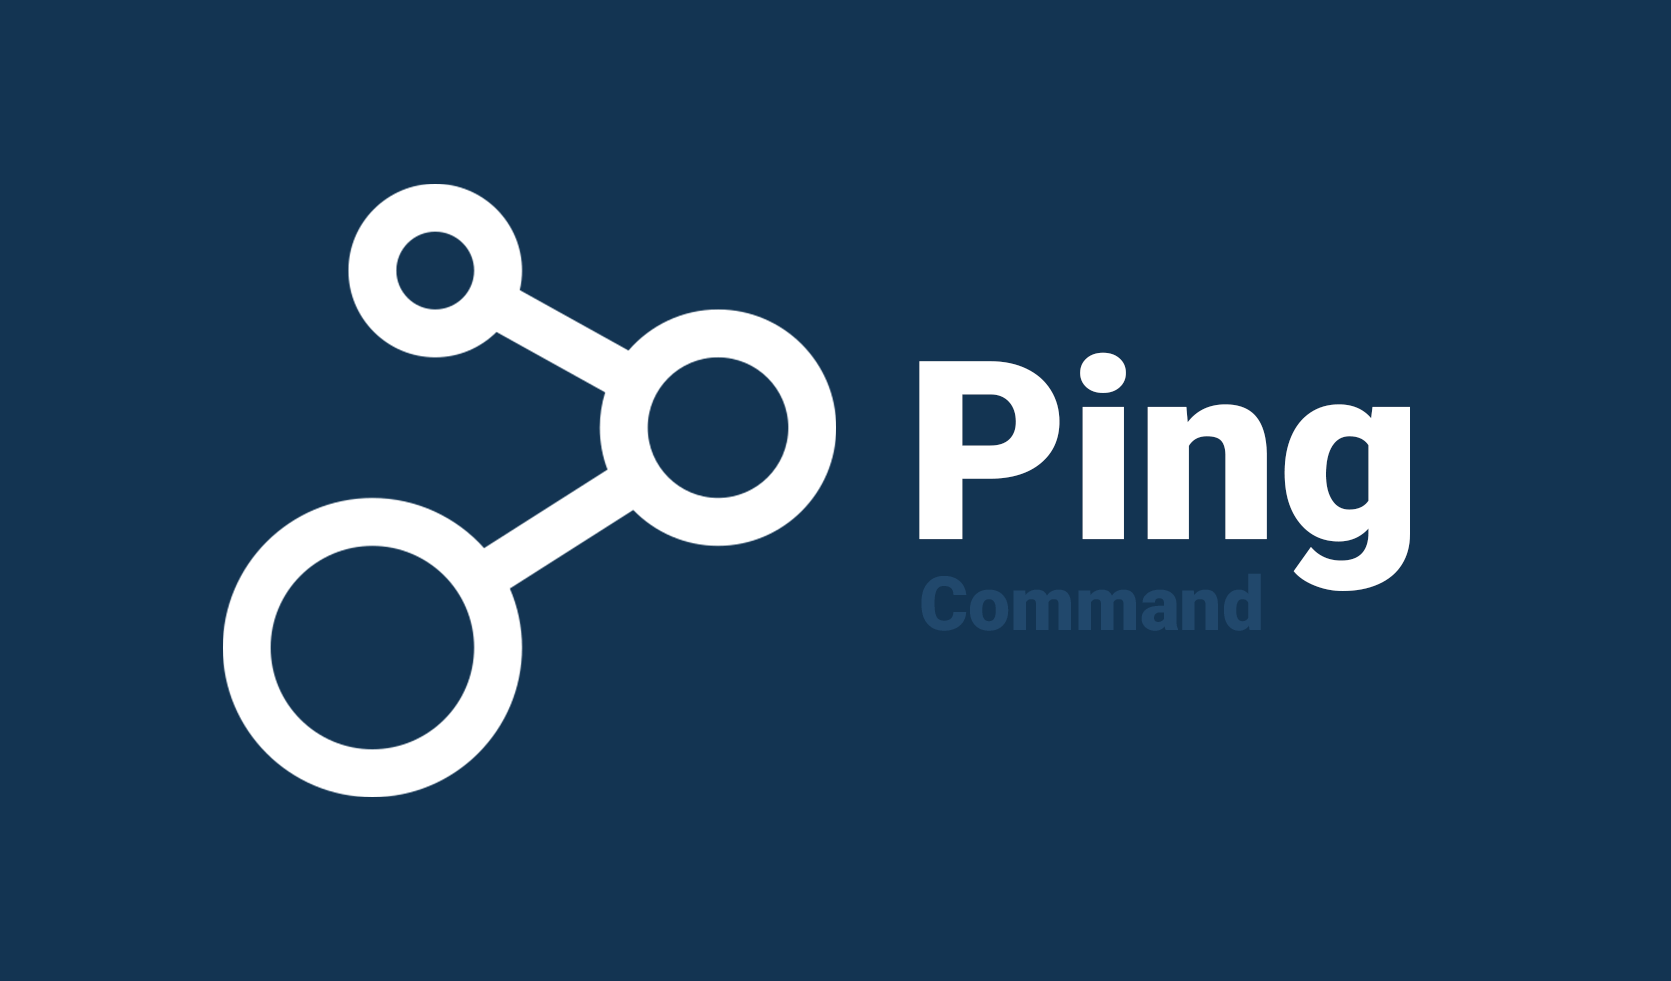 کاربرد دستور پینگ (Ping) چیست؟